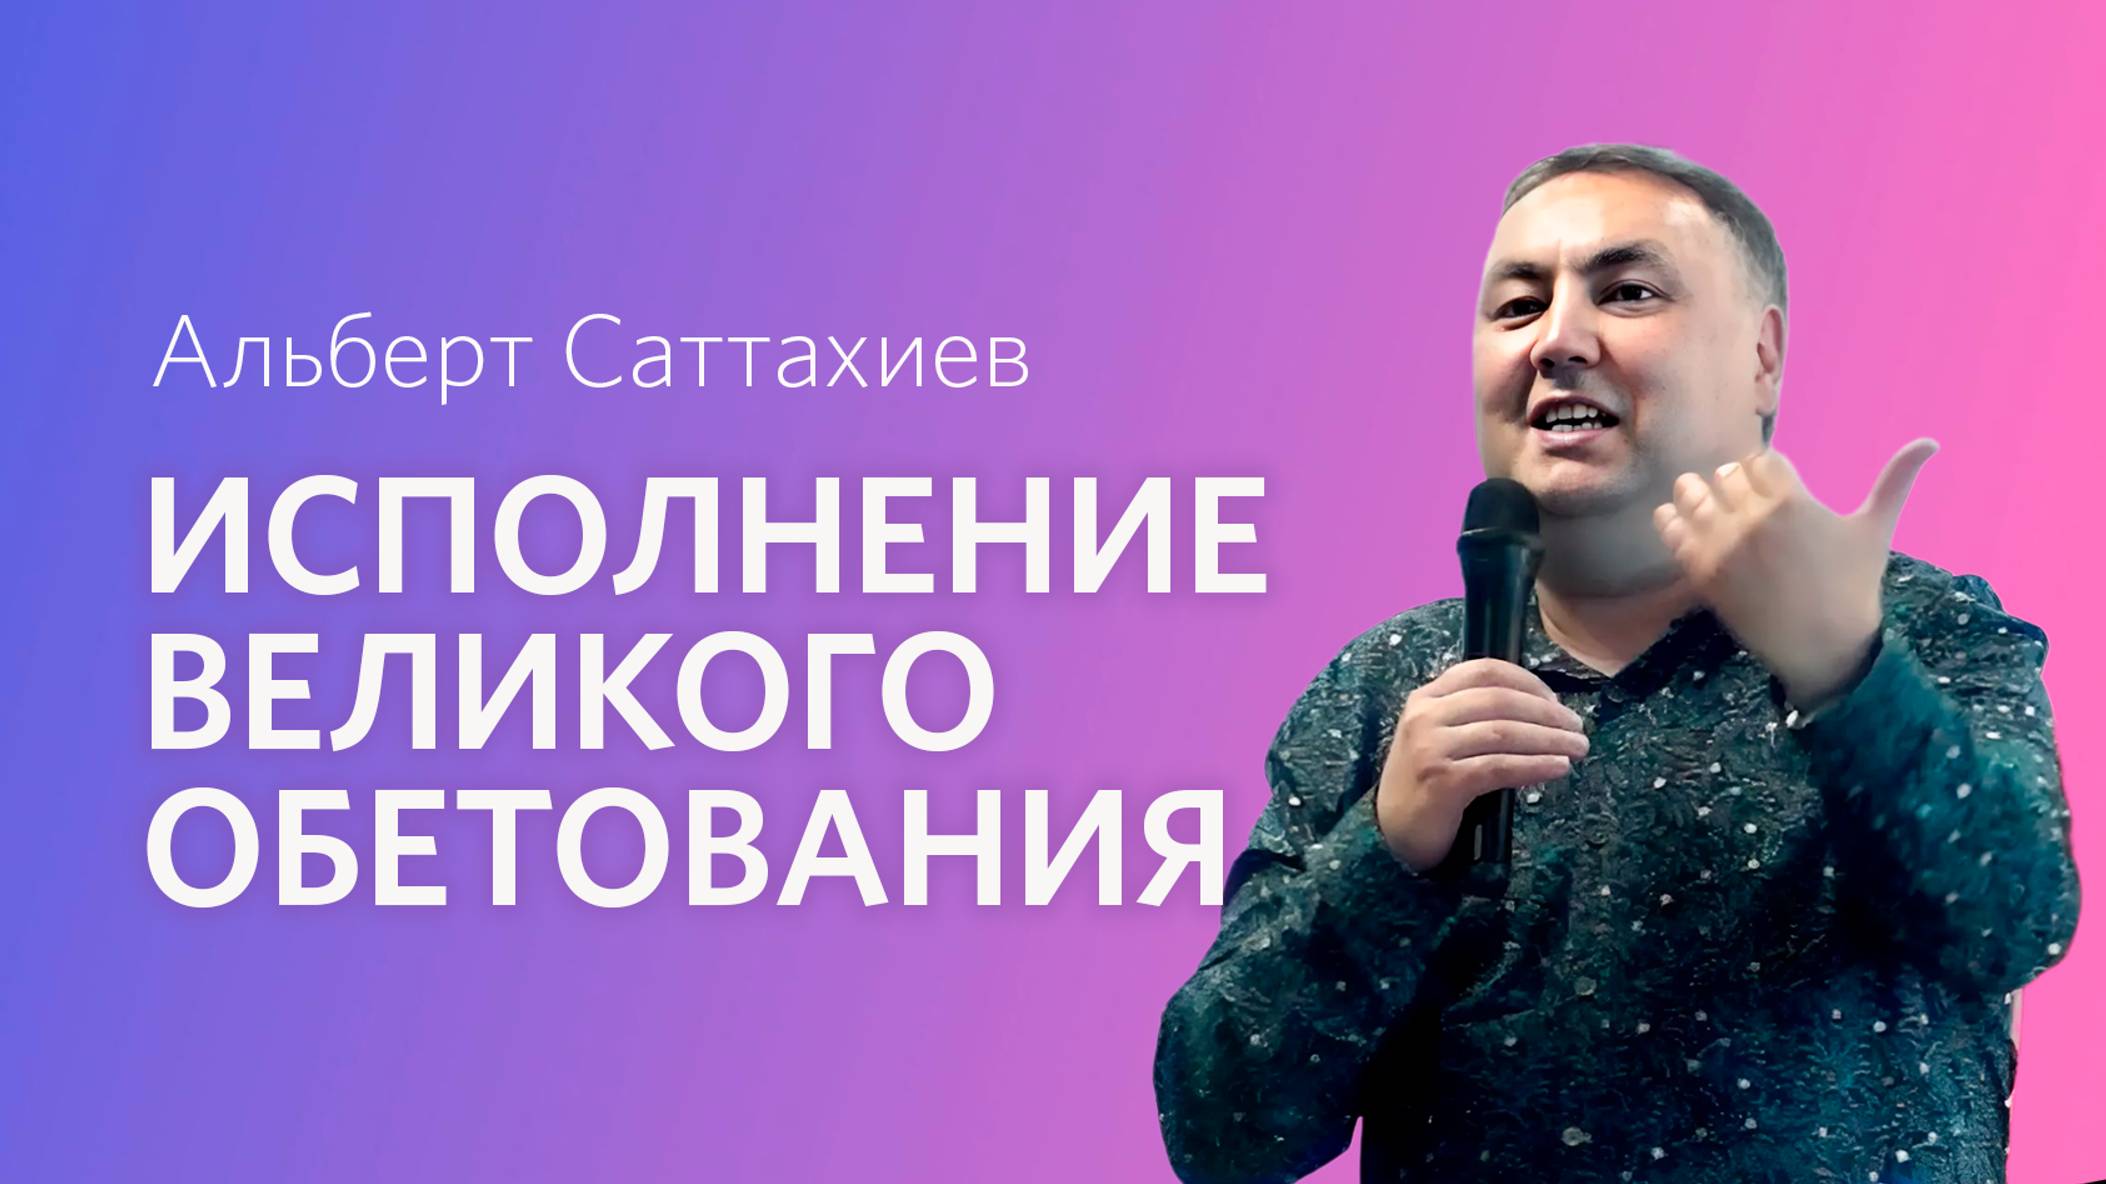 Альберт Саттахиев: Исполнение великого обетования